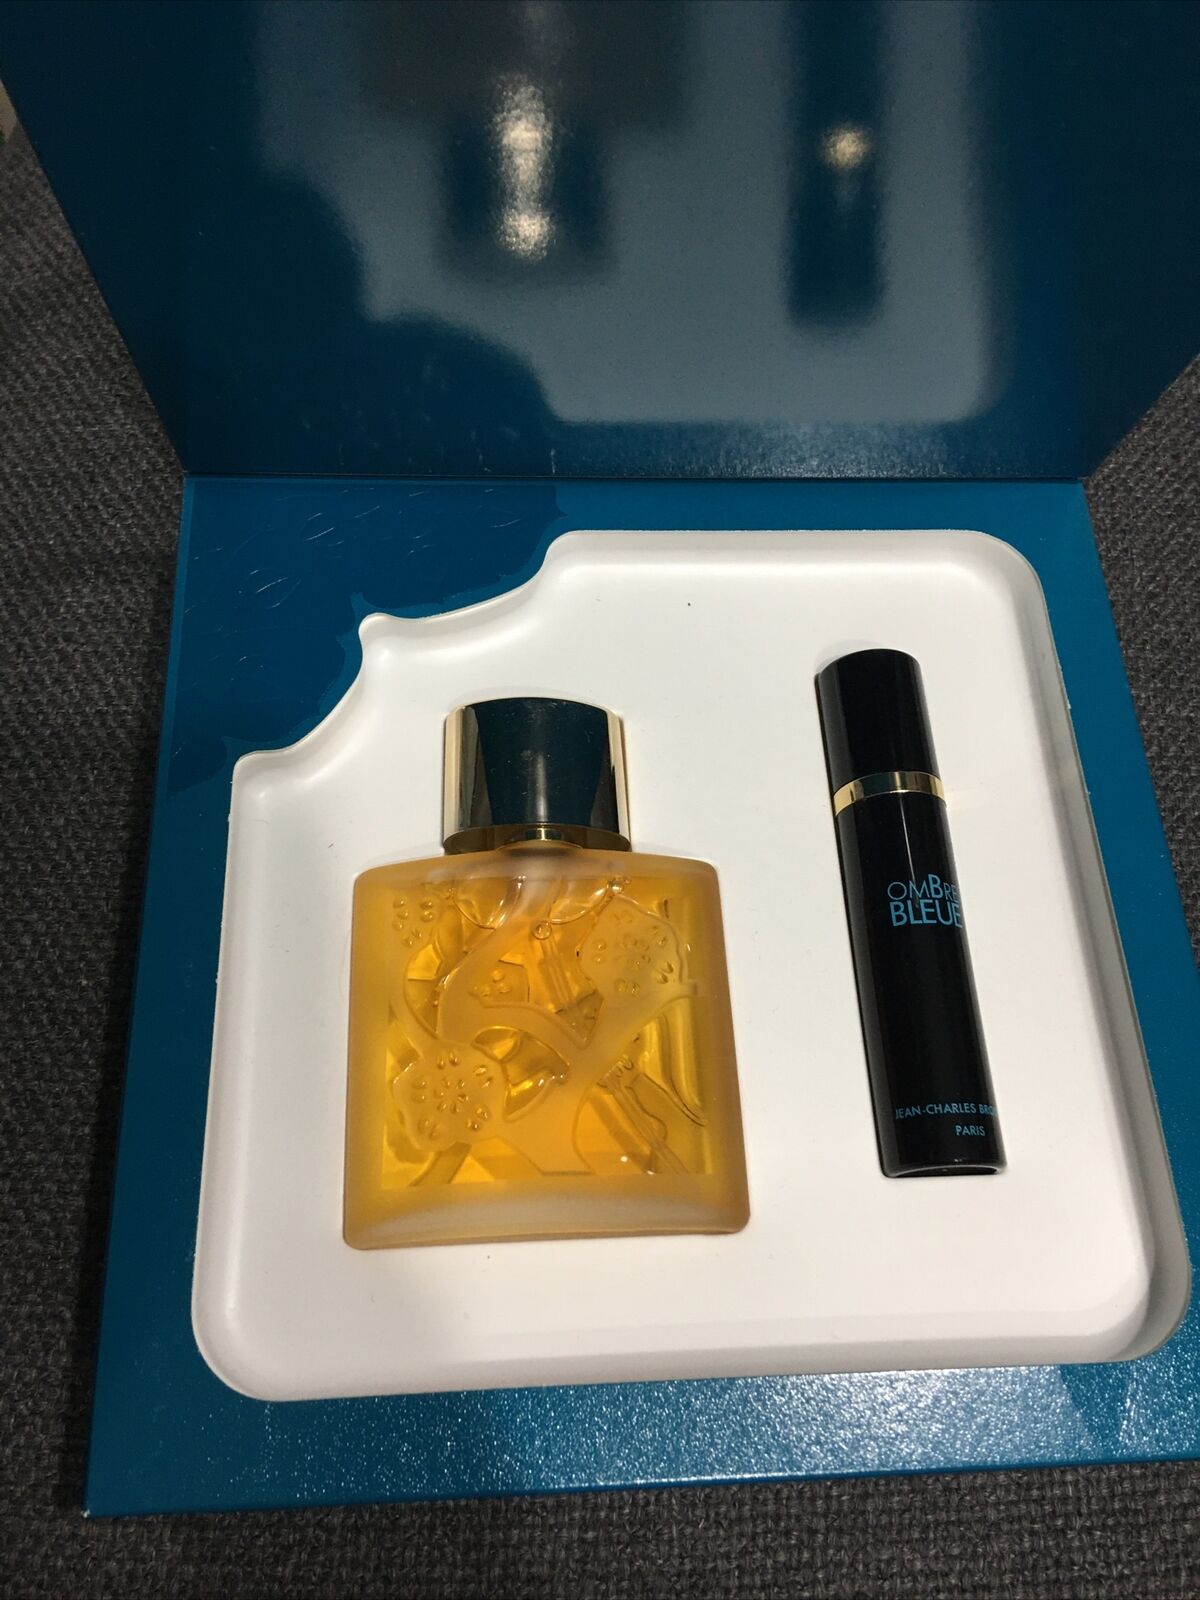 Vintage Ombre Bleue Jean Charles Brosseau Paris Gift Set Parfum Eau De Toilette